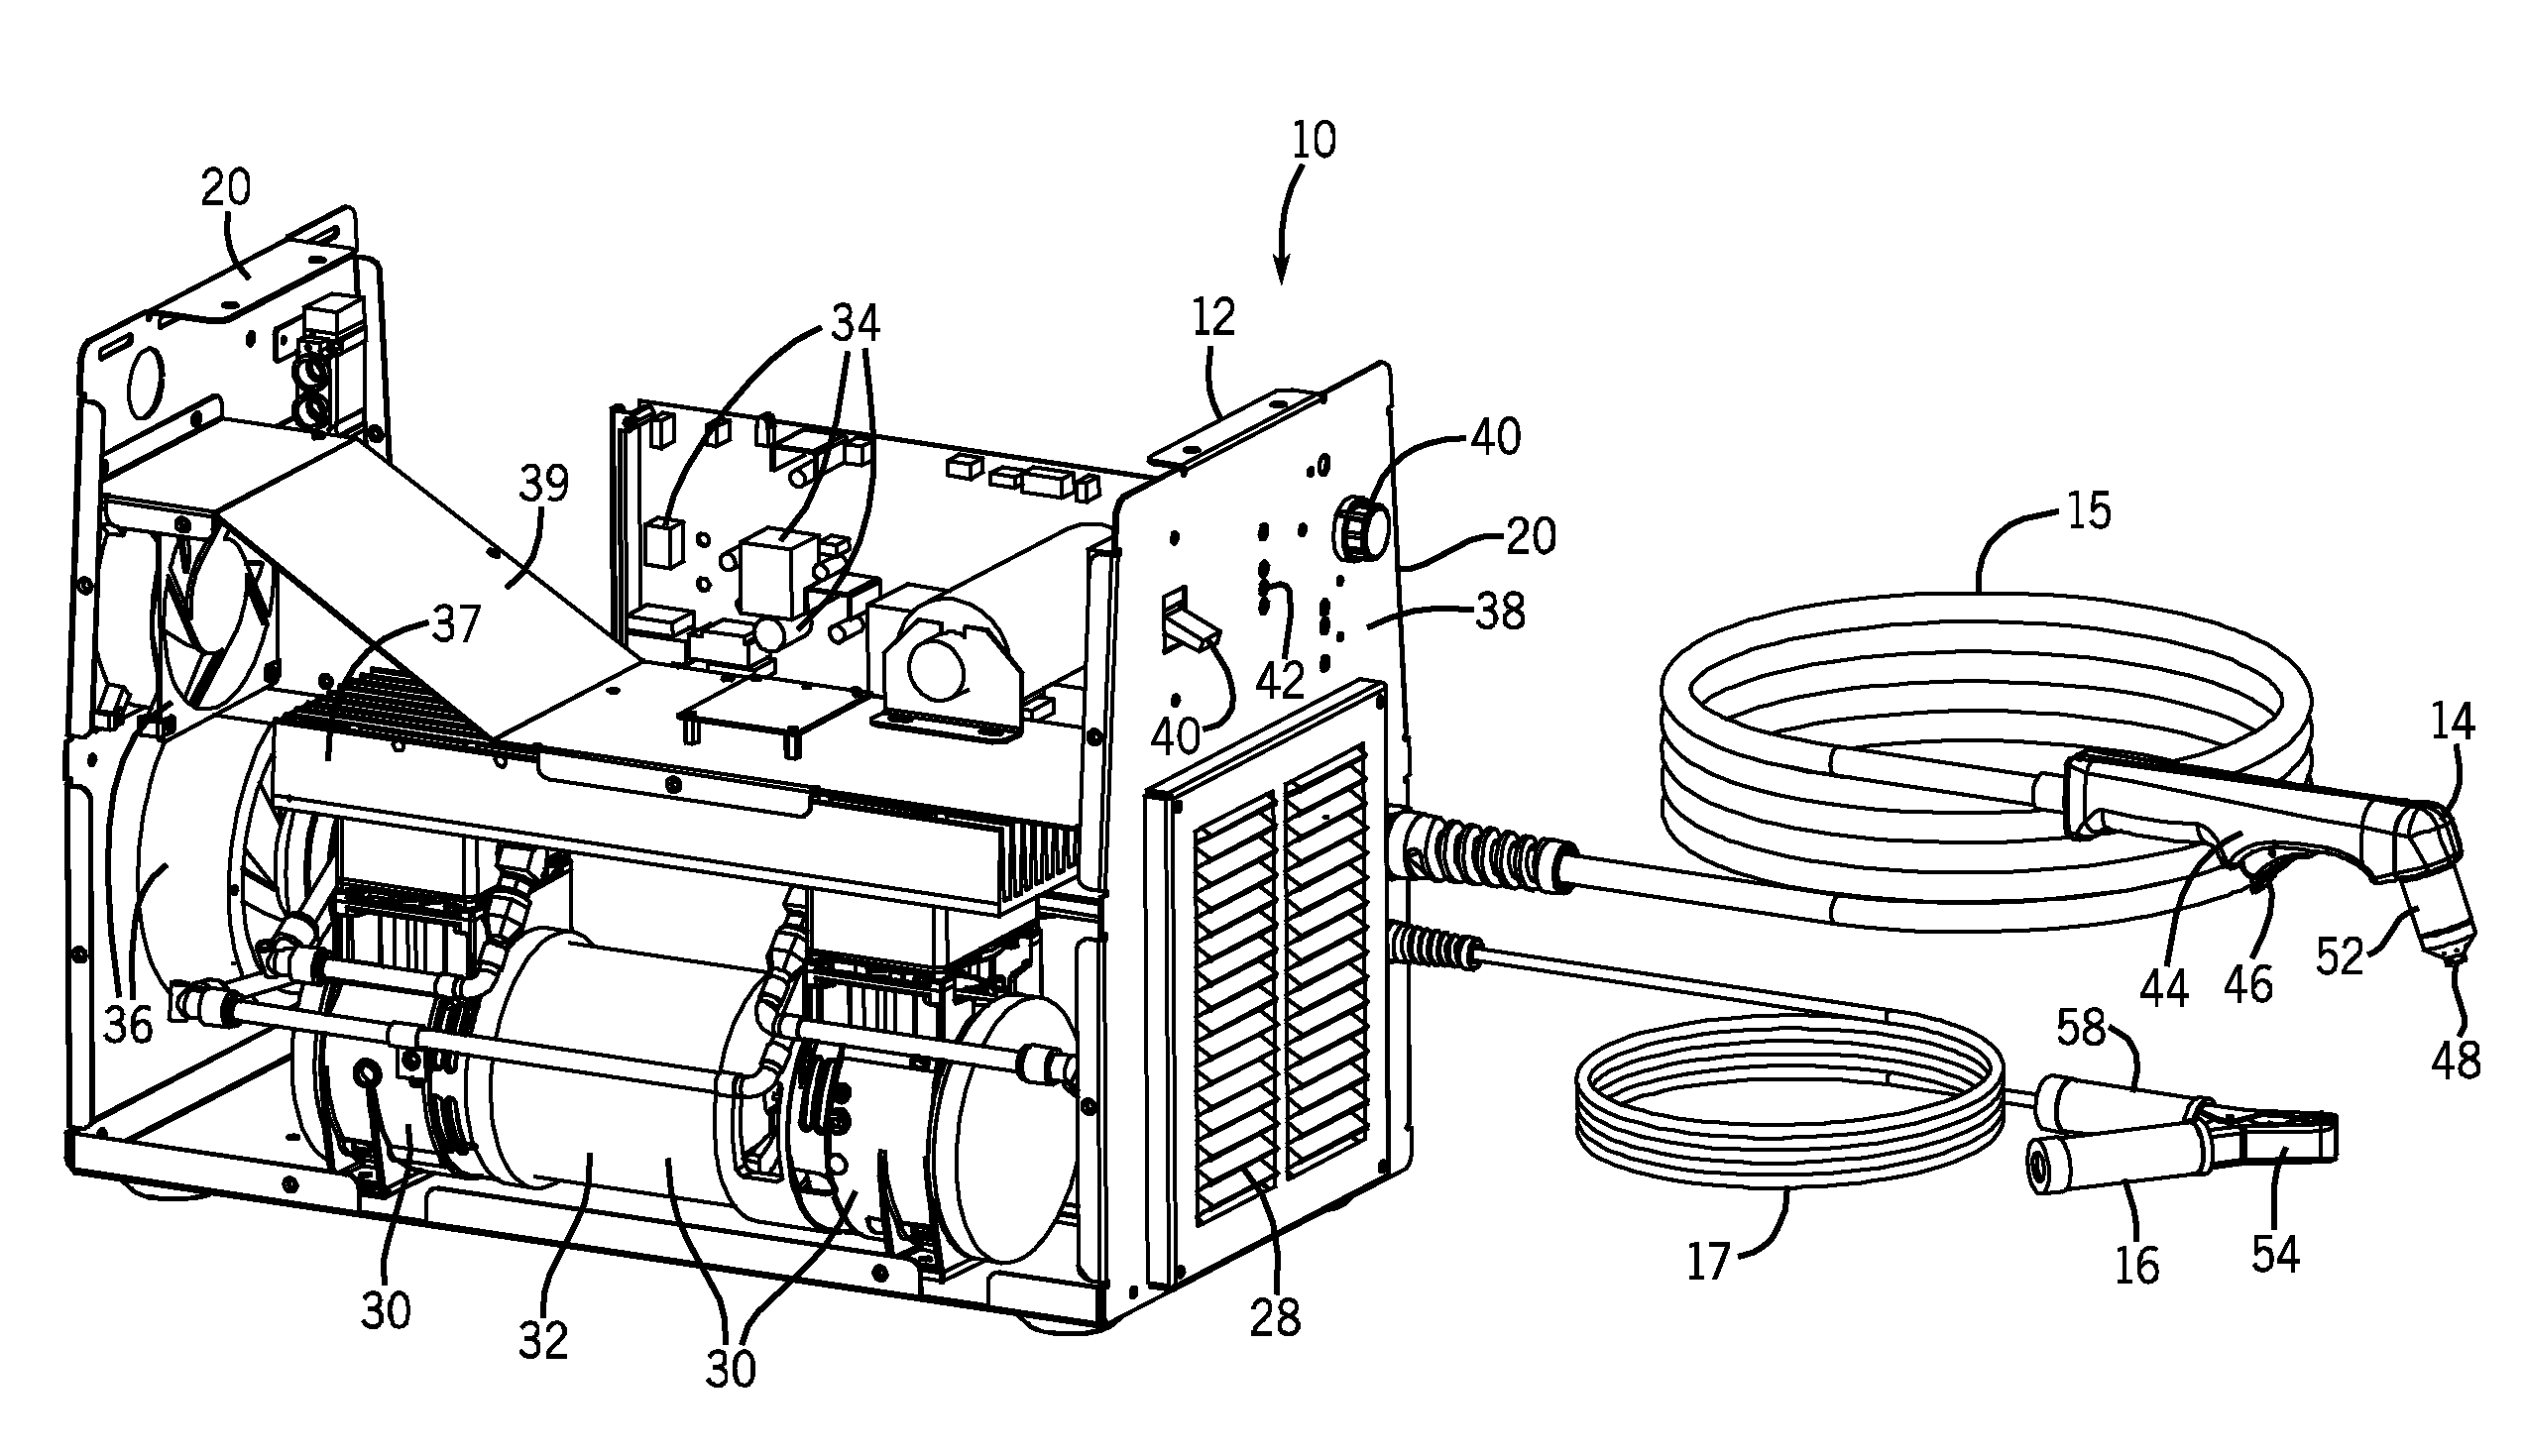 Multi-stage compressor in a plasma cutter